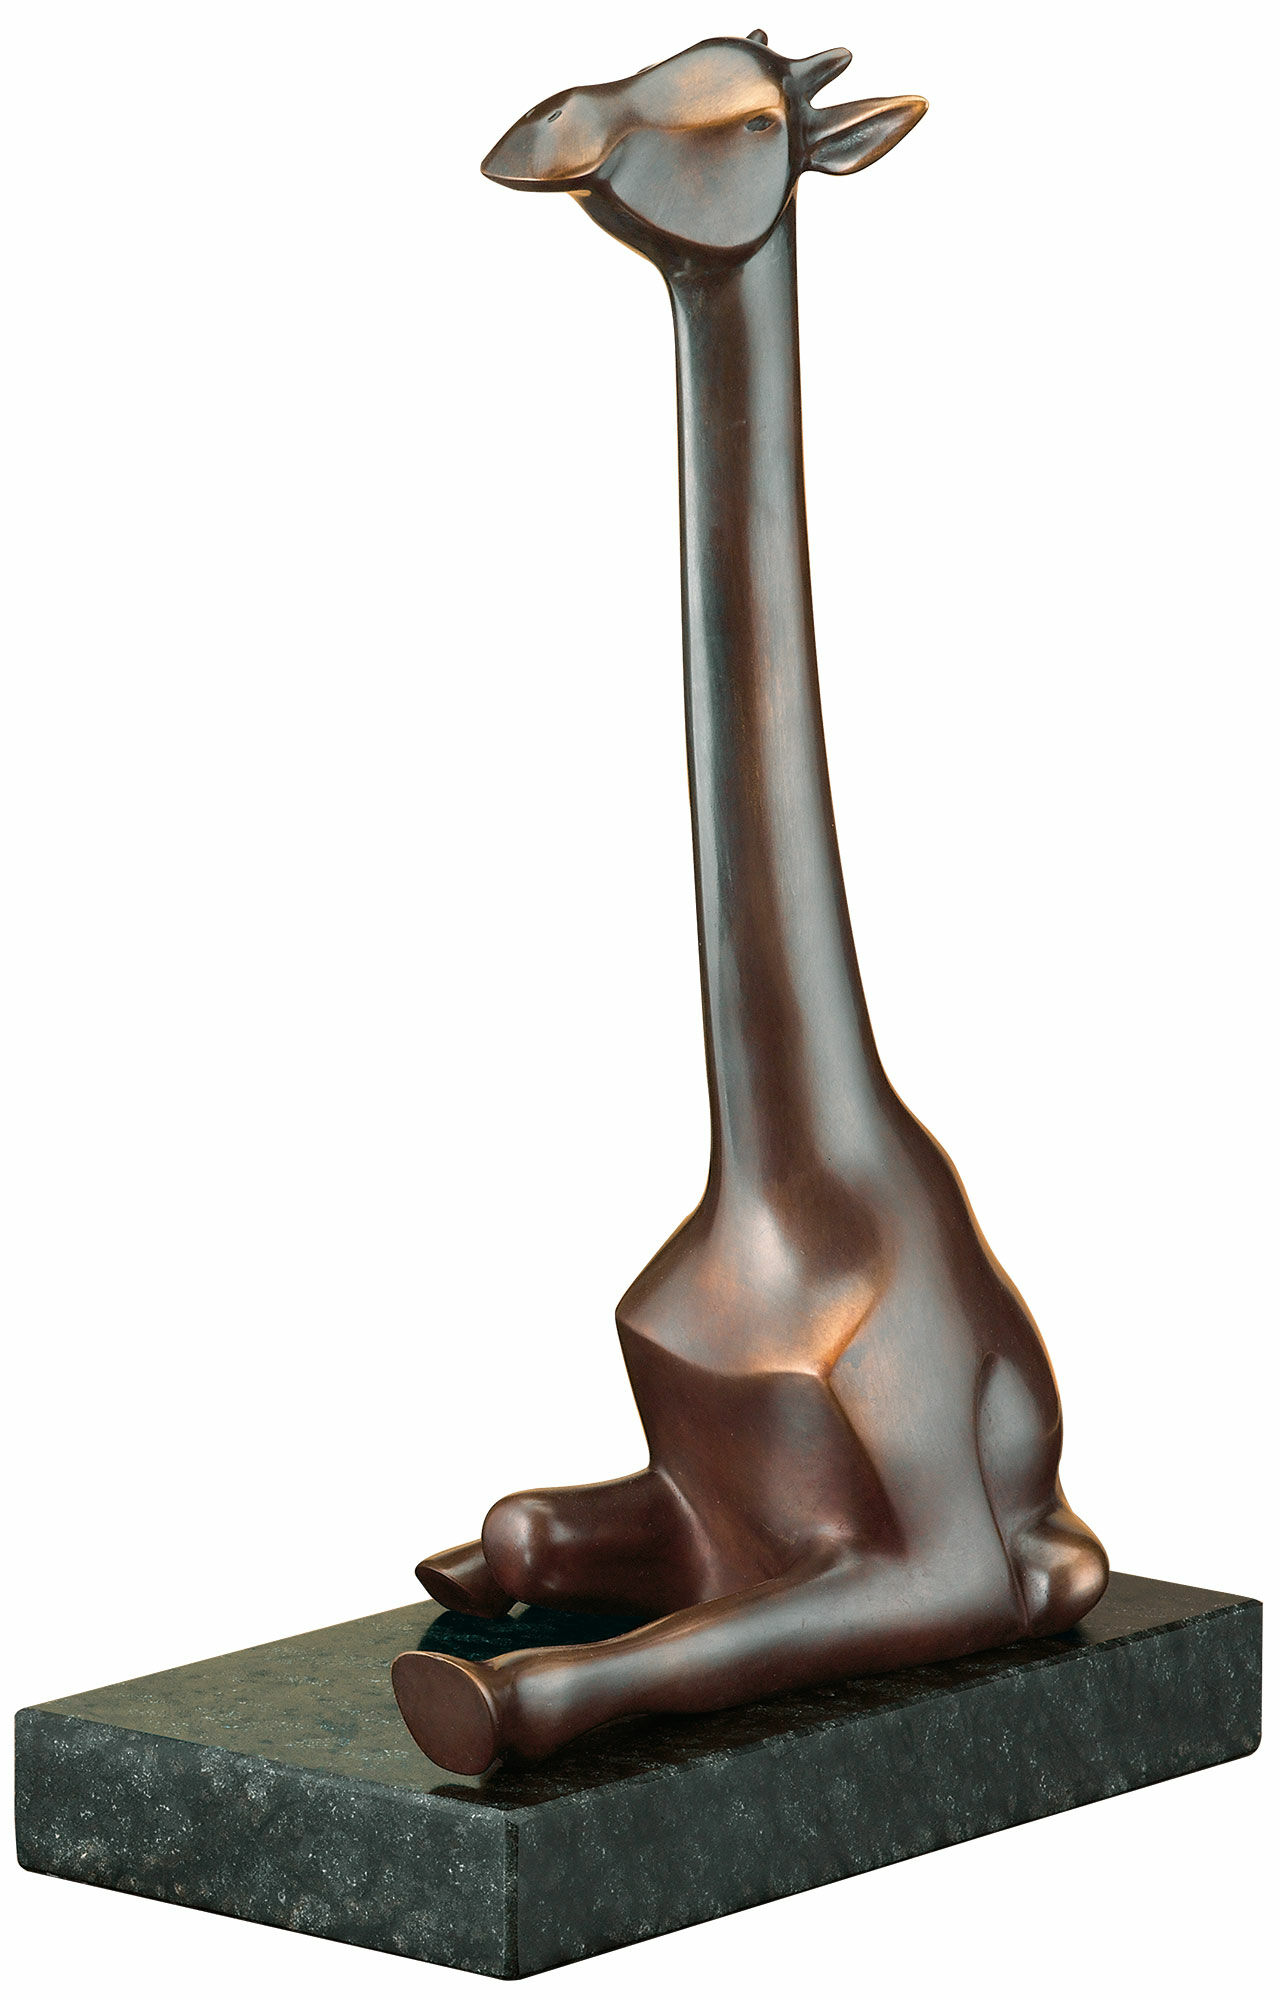 Sculpture "The Giraffe", bronze by Evert den Hartog